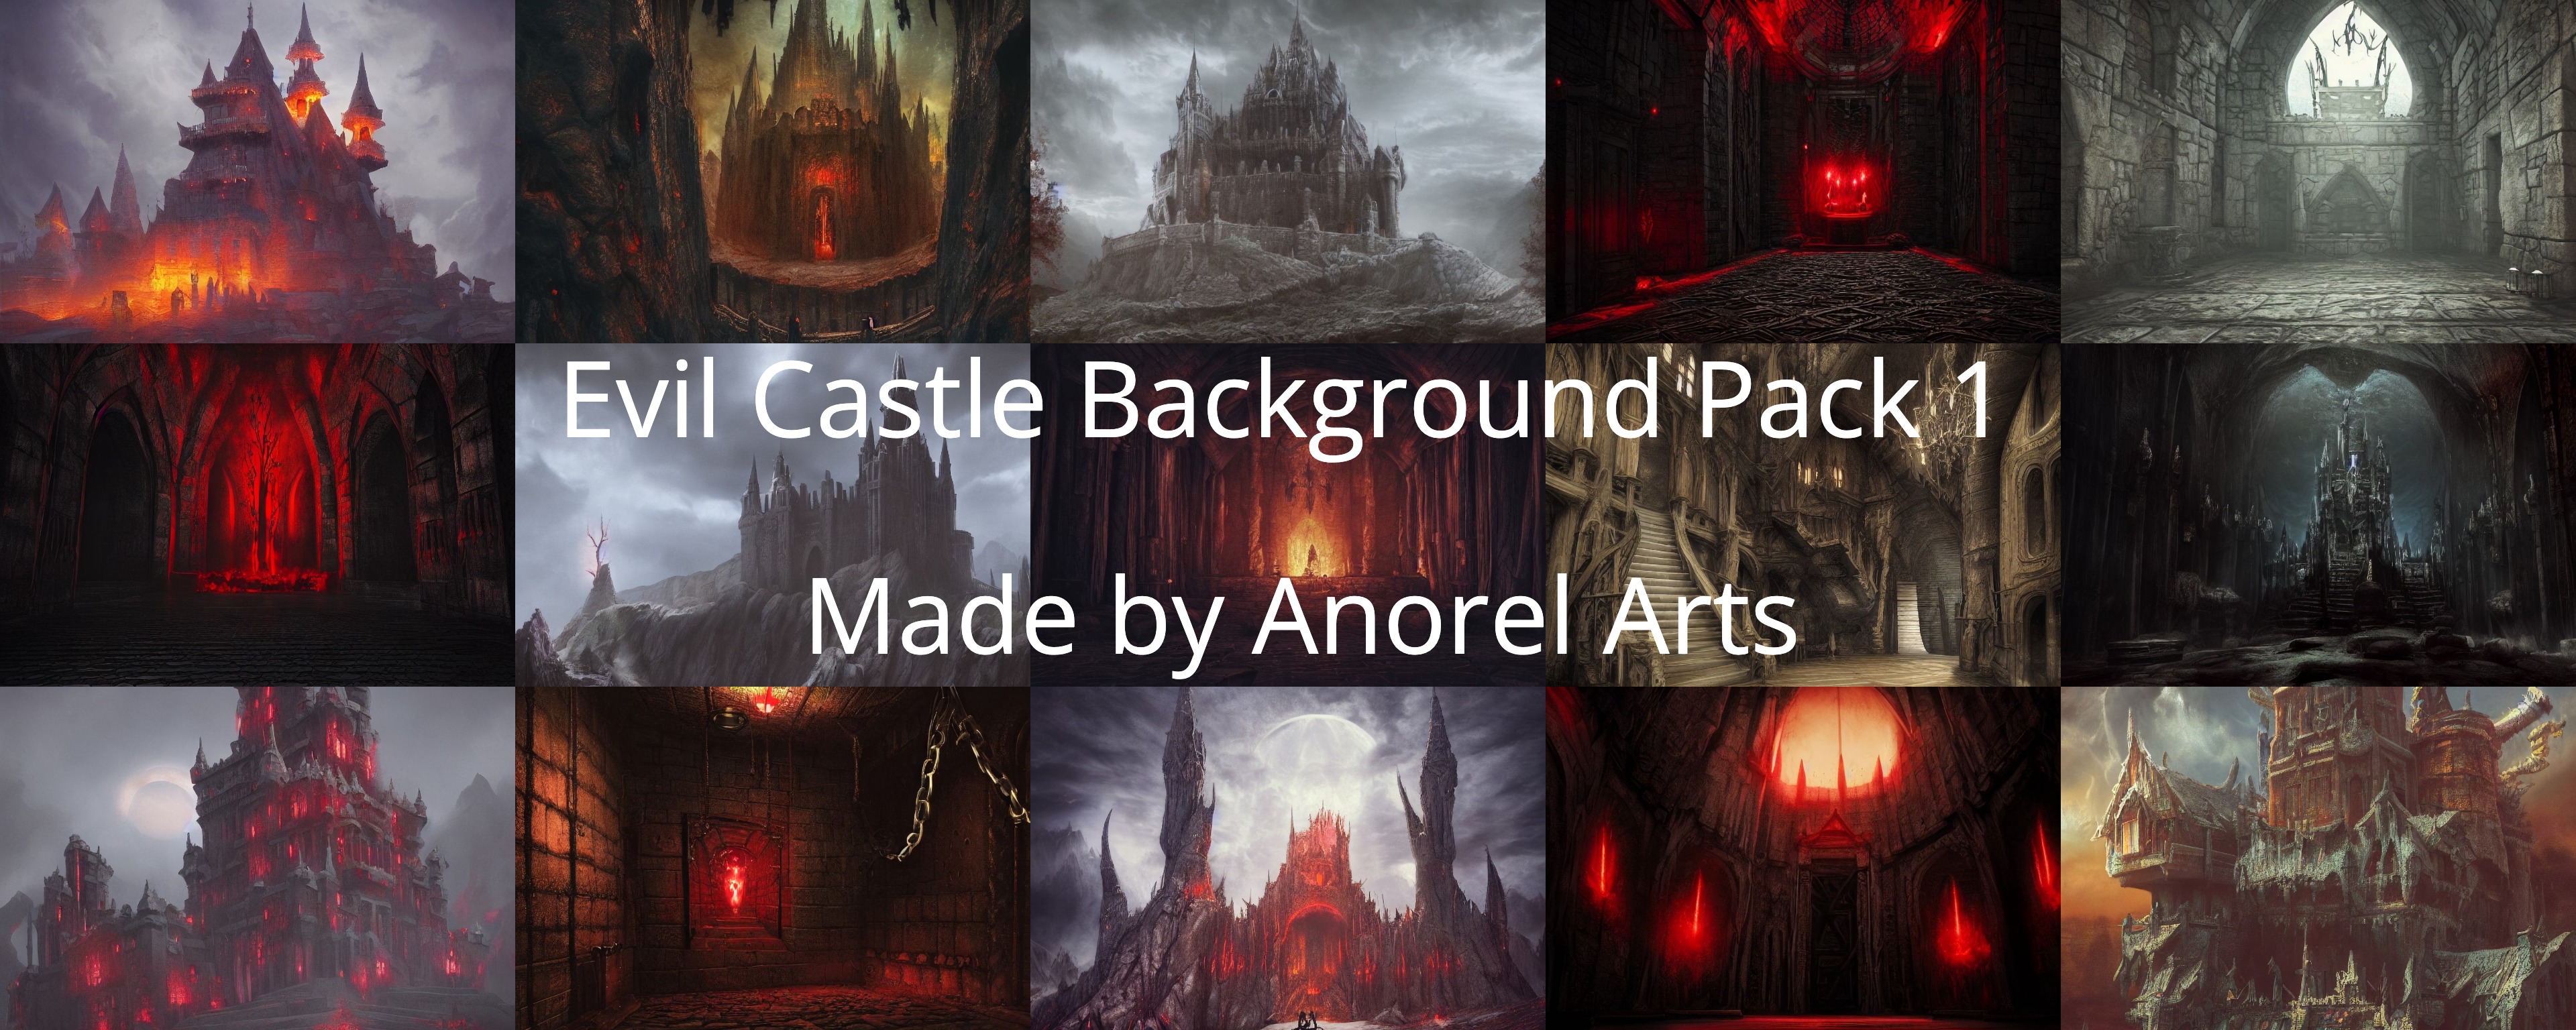 Evil Castle Background Pack 1